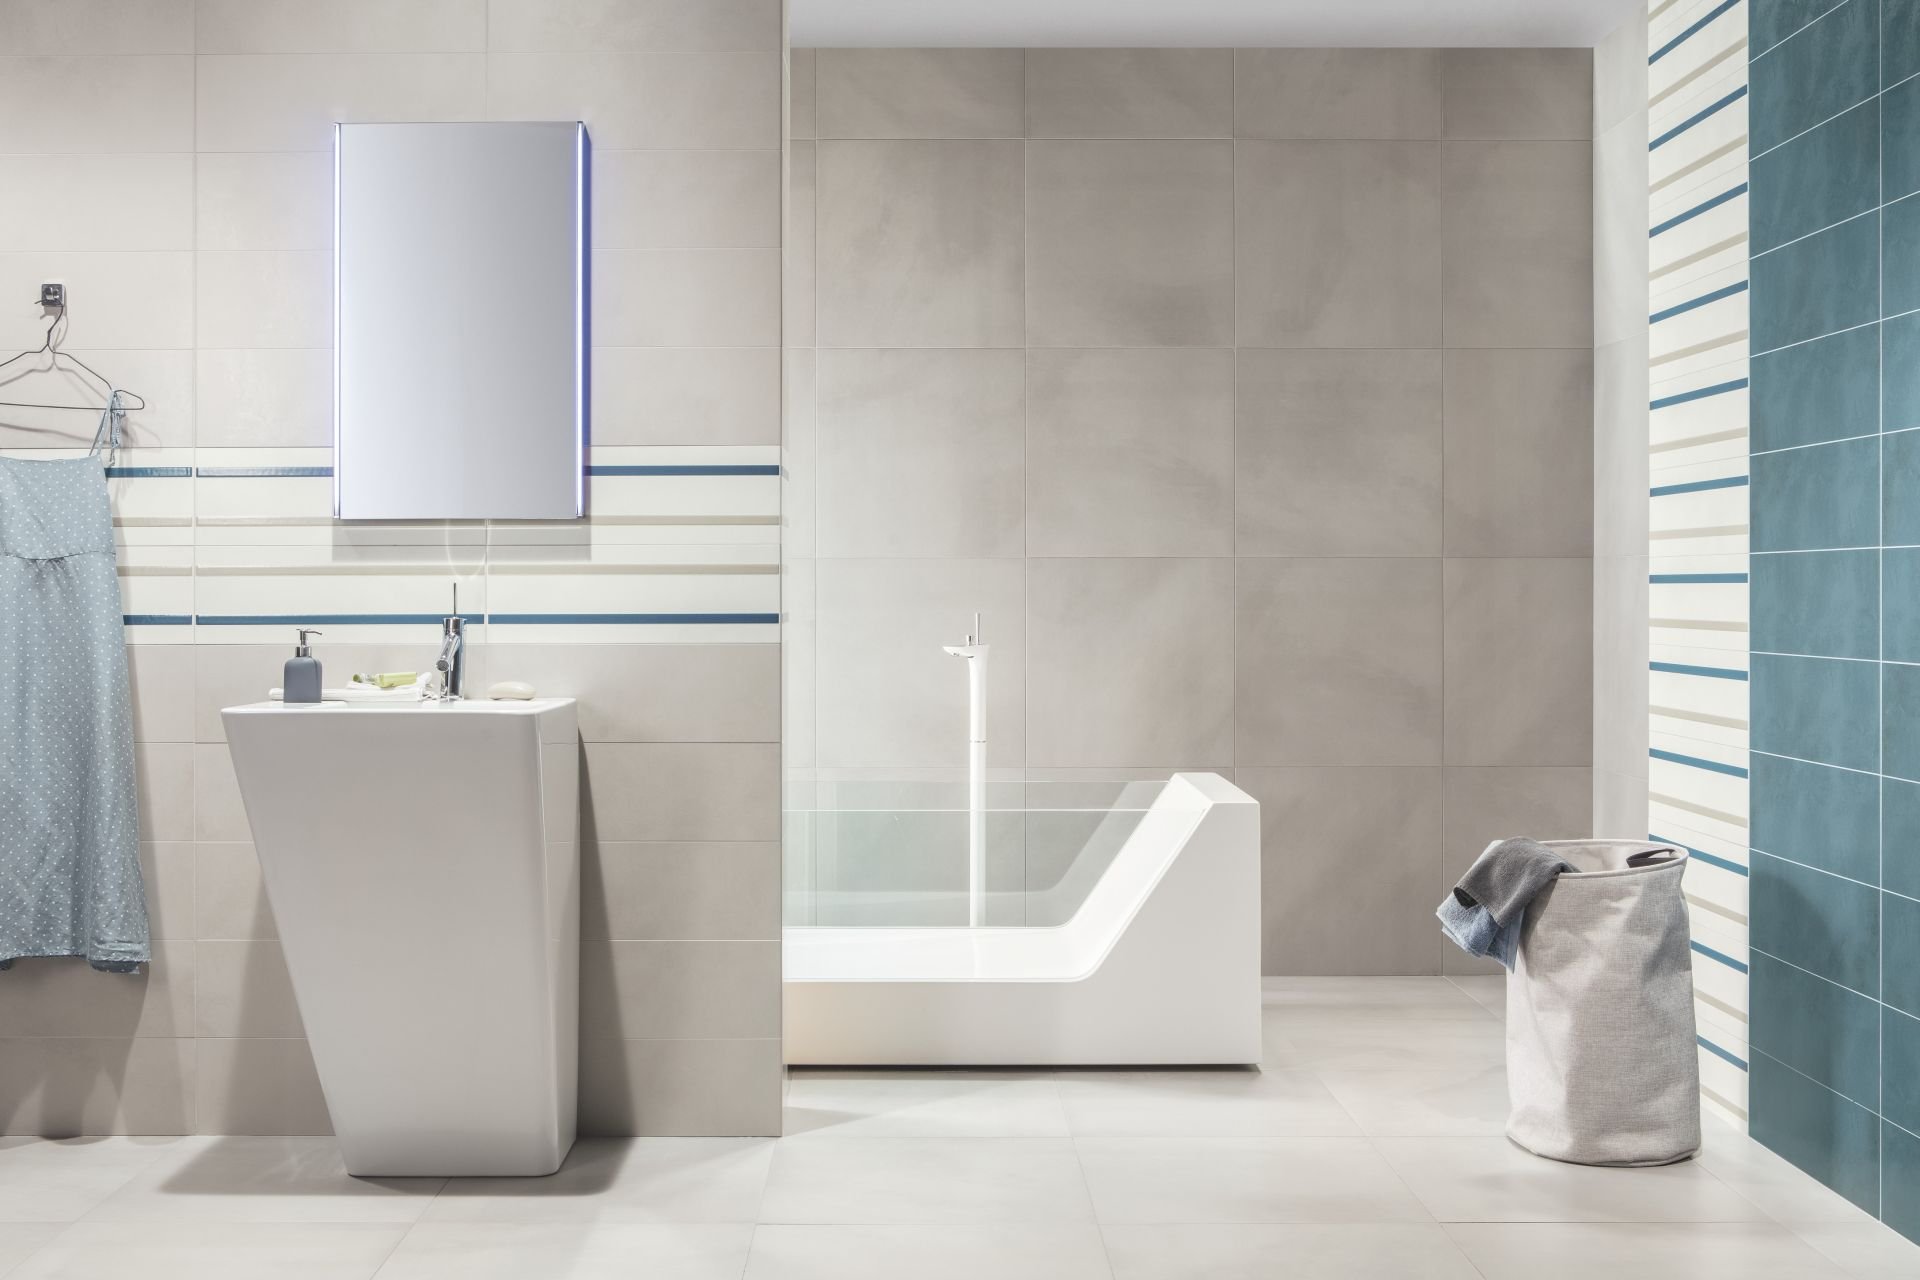 #RAKO #Blend #Obklady a dlažby #Koupelna #Klasický styl #modrá #Matný obklad #Velký formát #350 - 500 Kč/m2 #new #šedá 